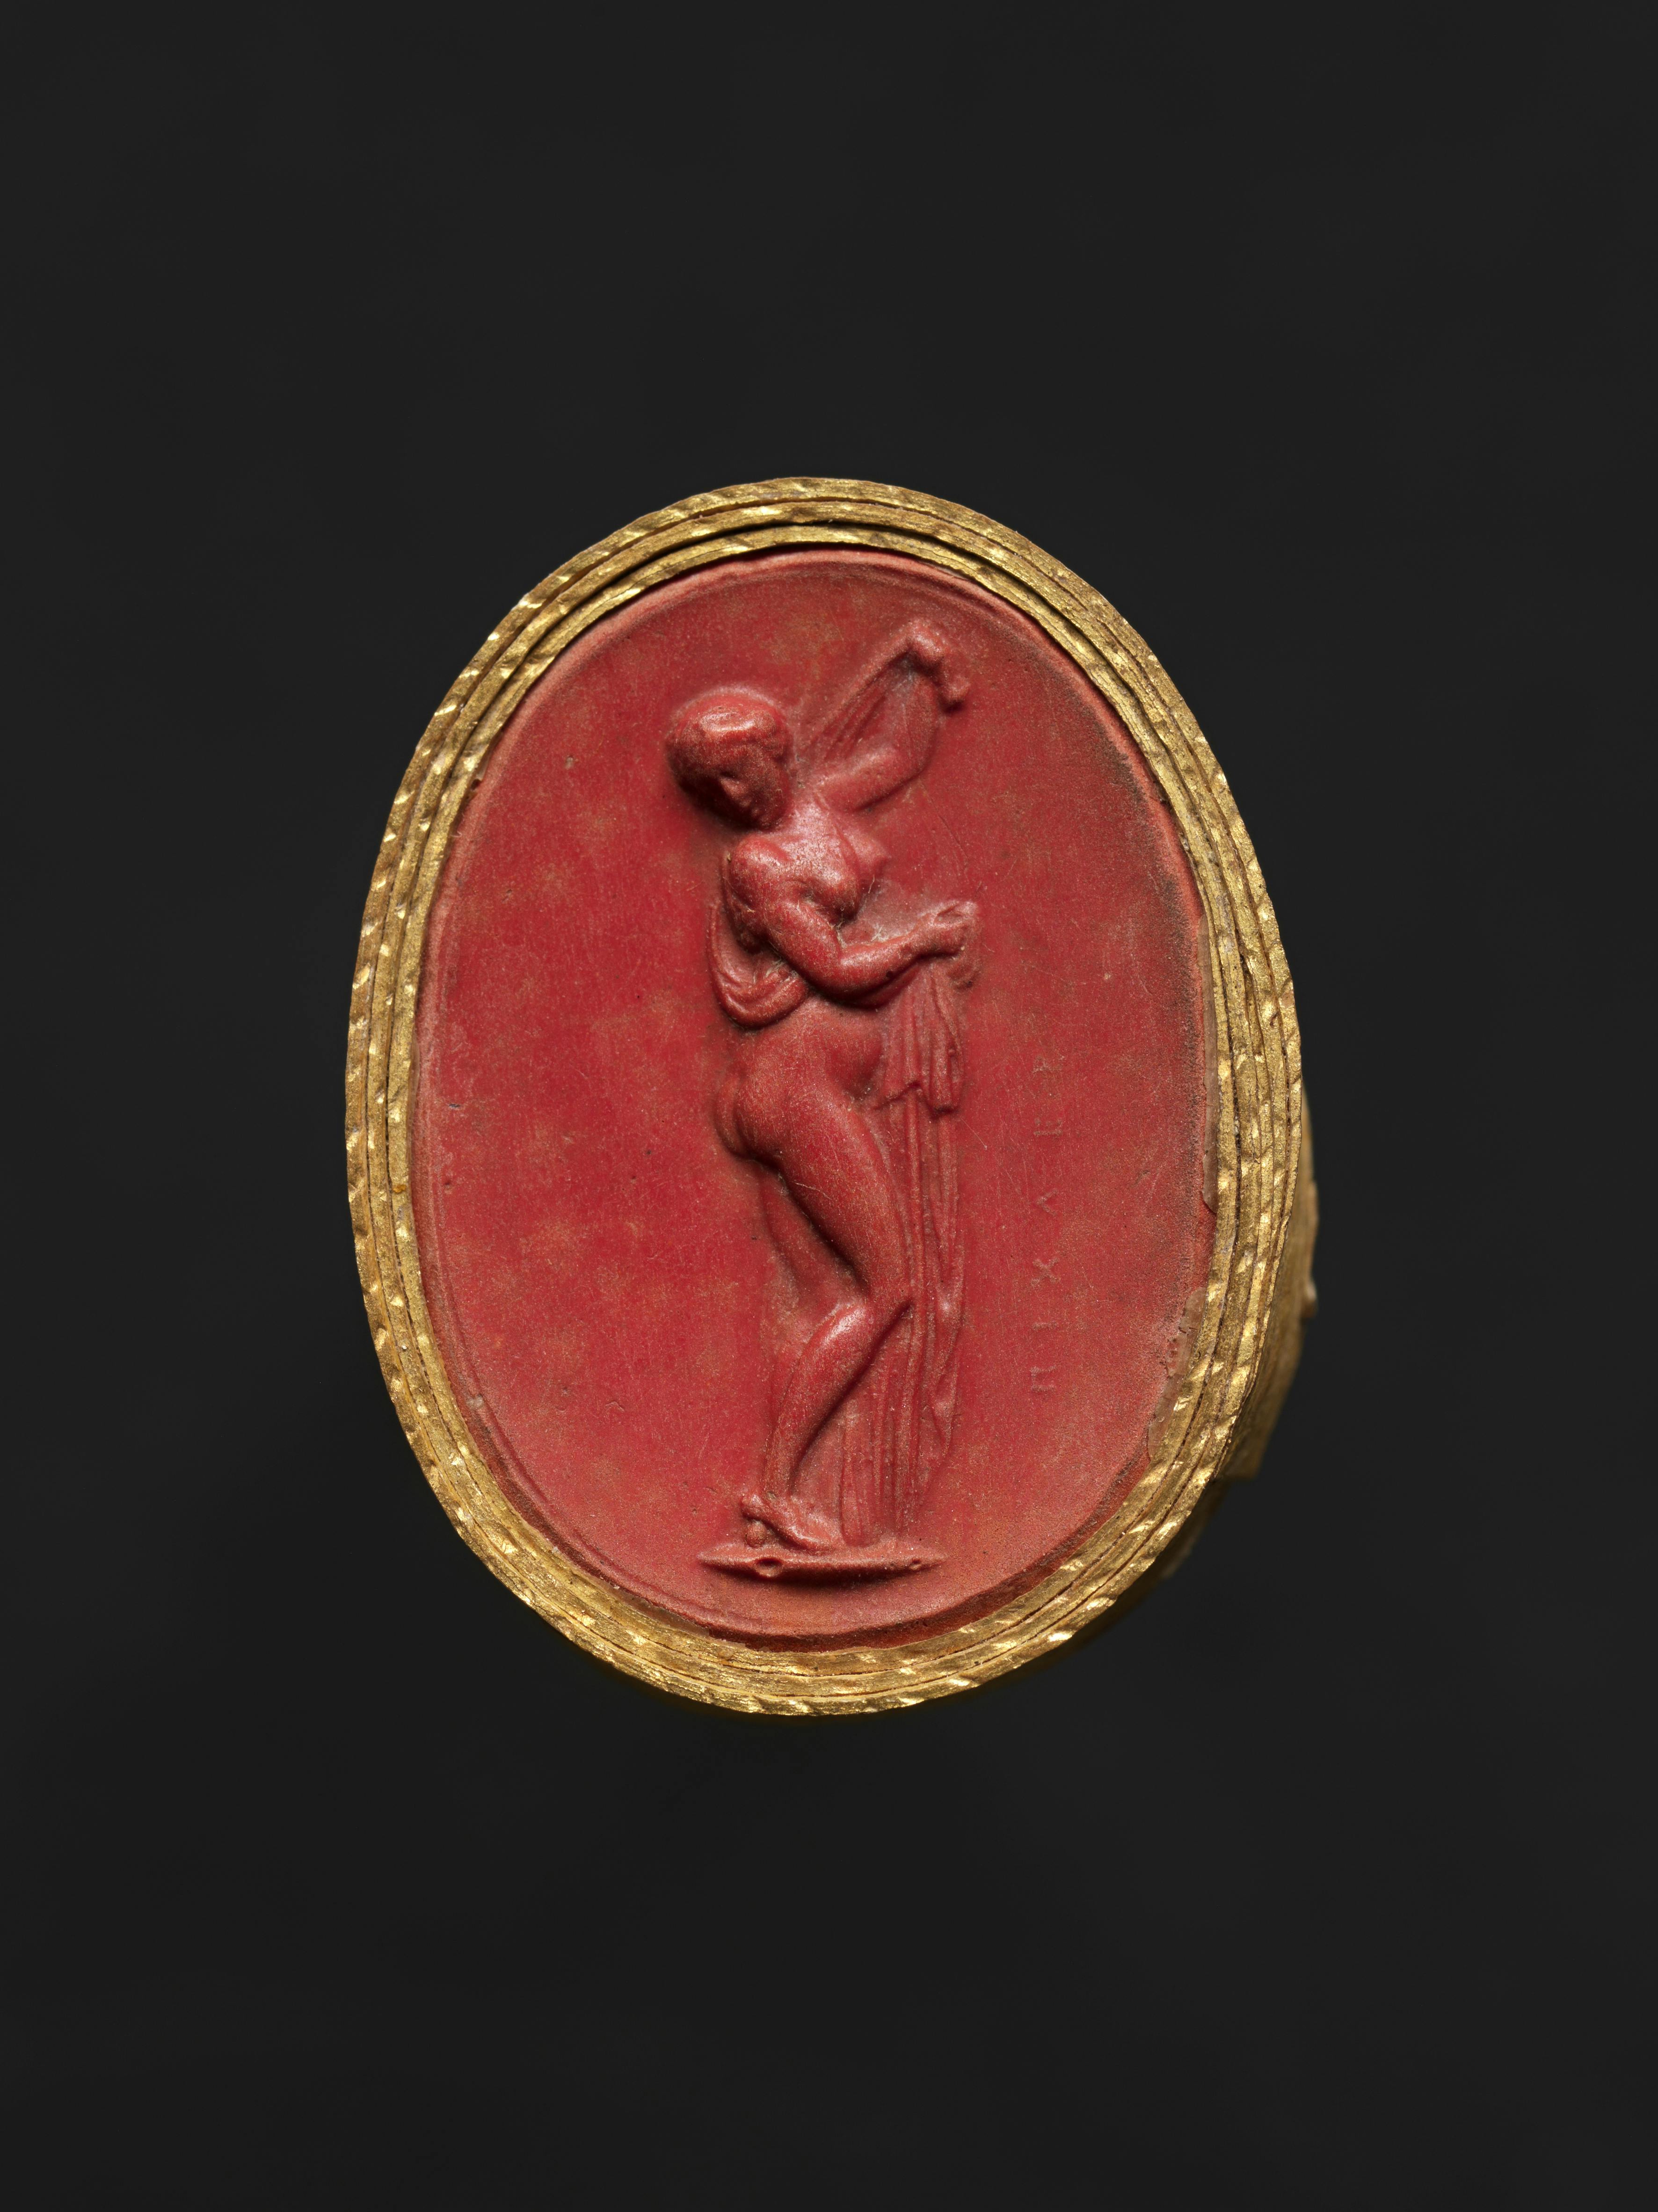 Ovale rosso con cornice dorata. Al centro è raffigurata una figura femminile con un braccio alzato.